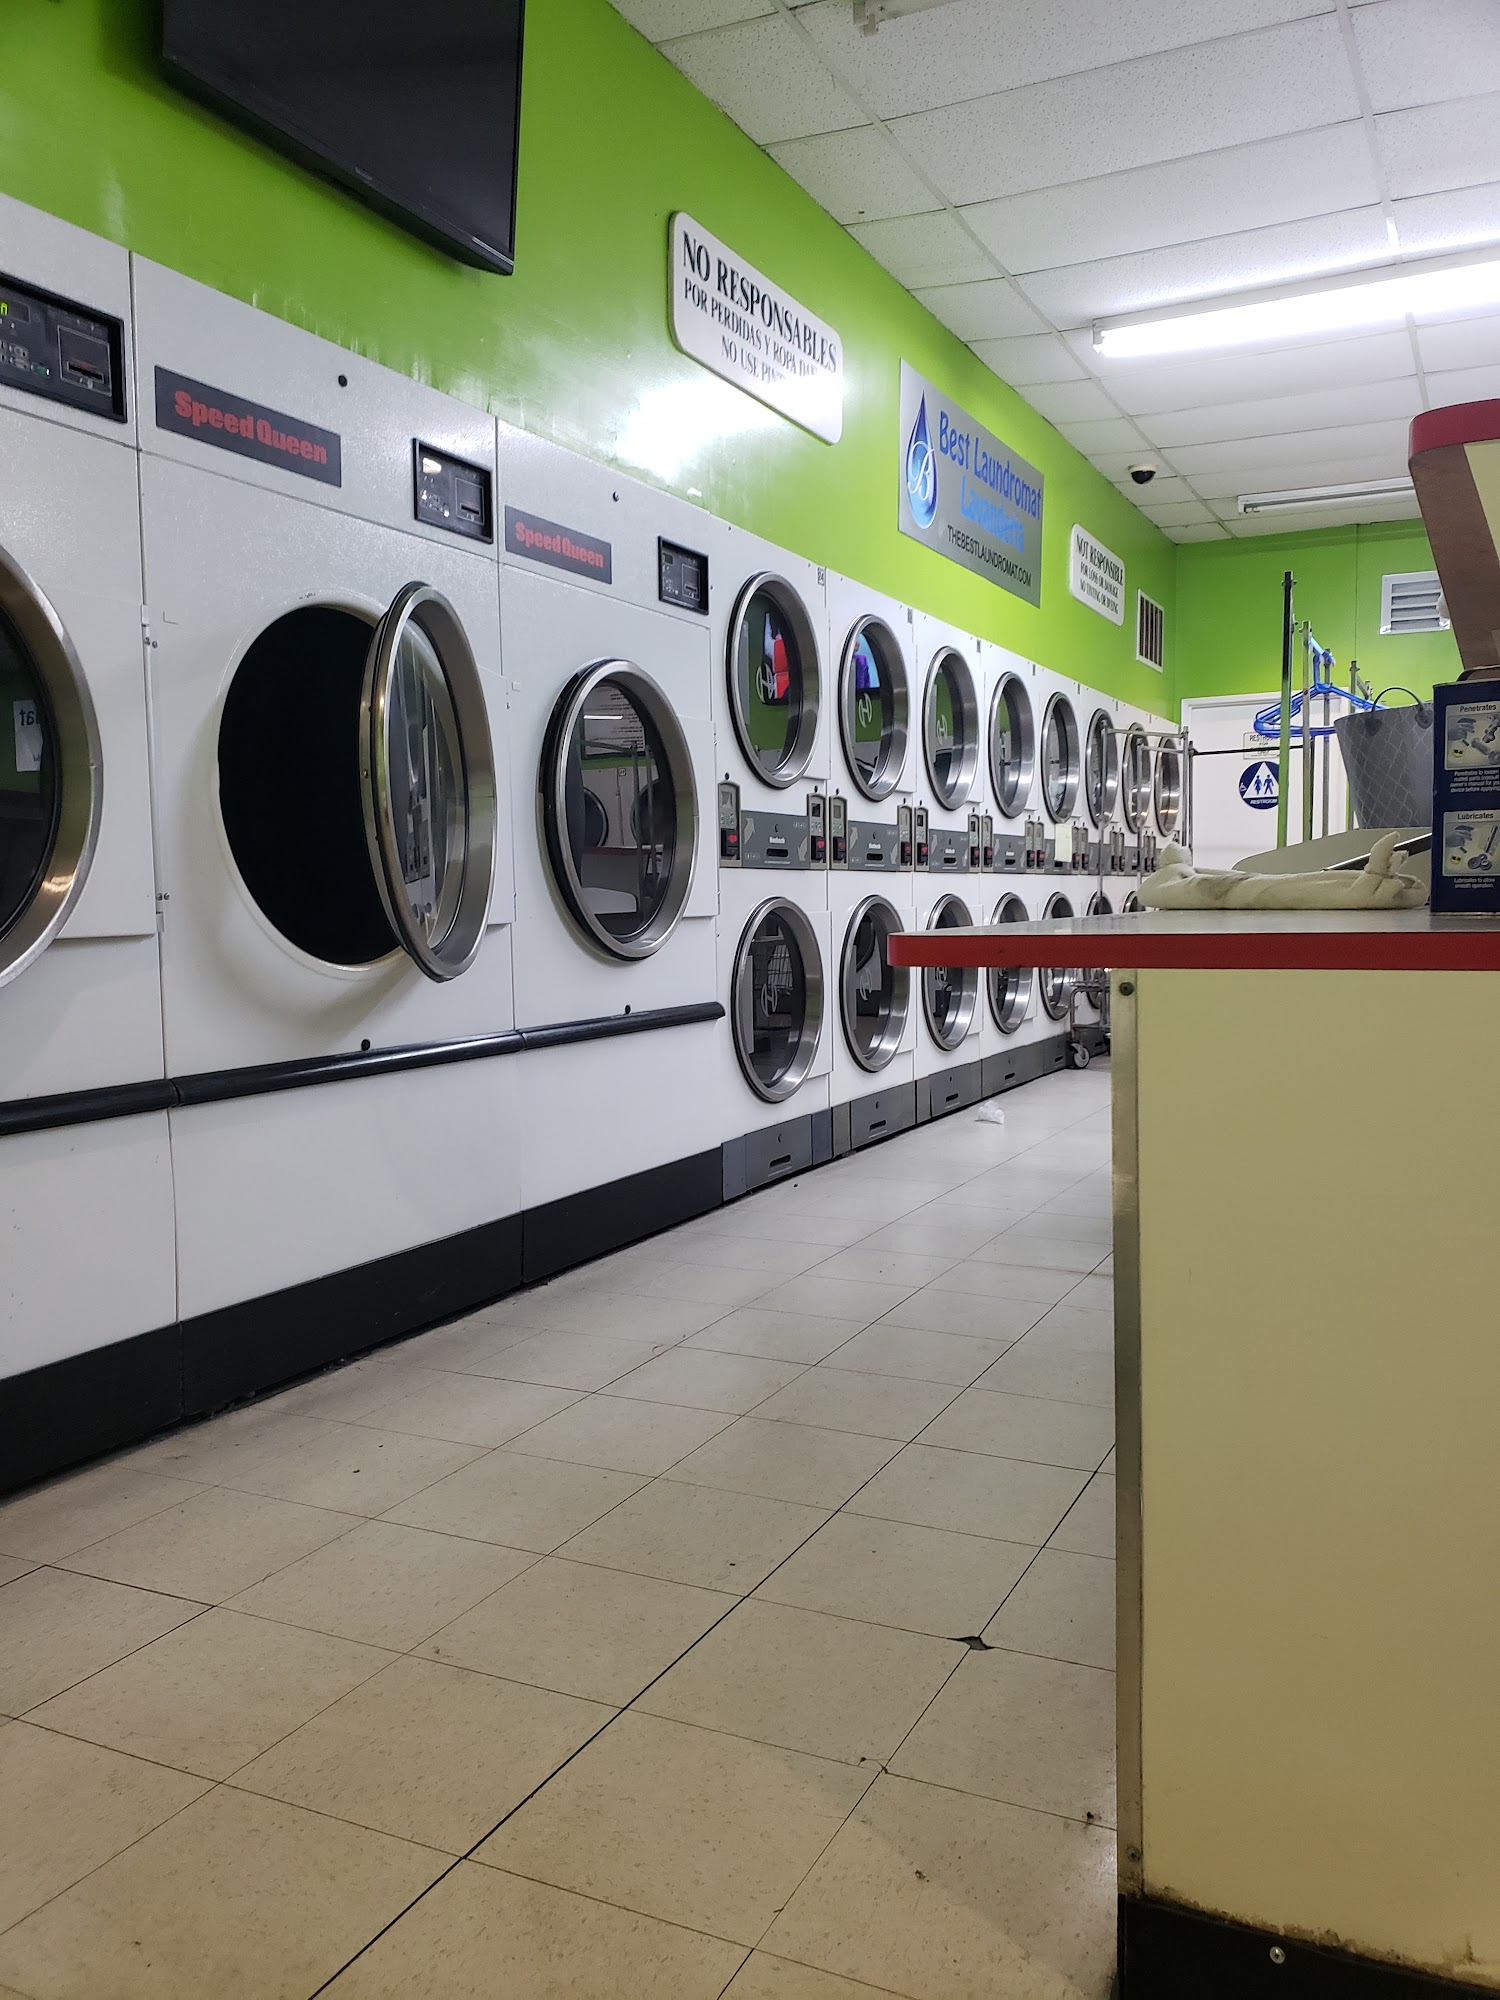 Best Laundromat